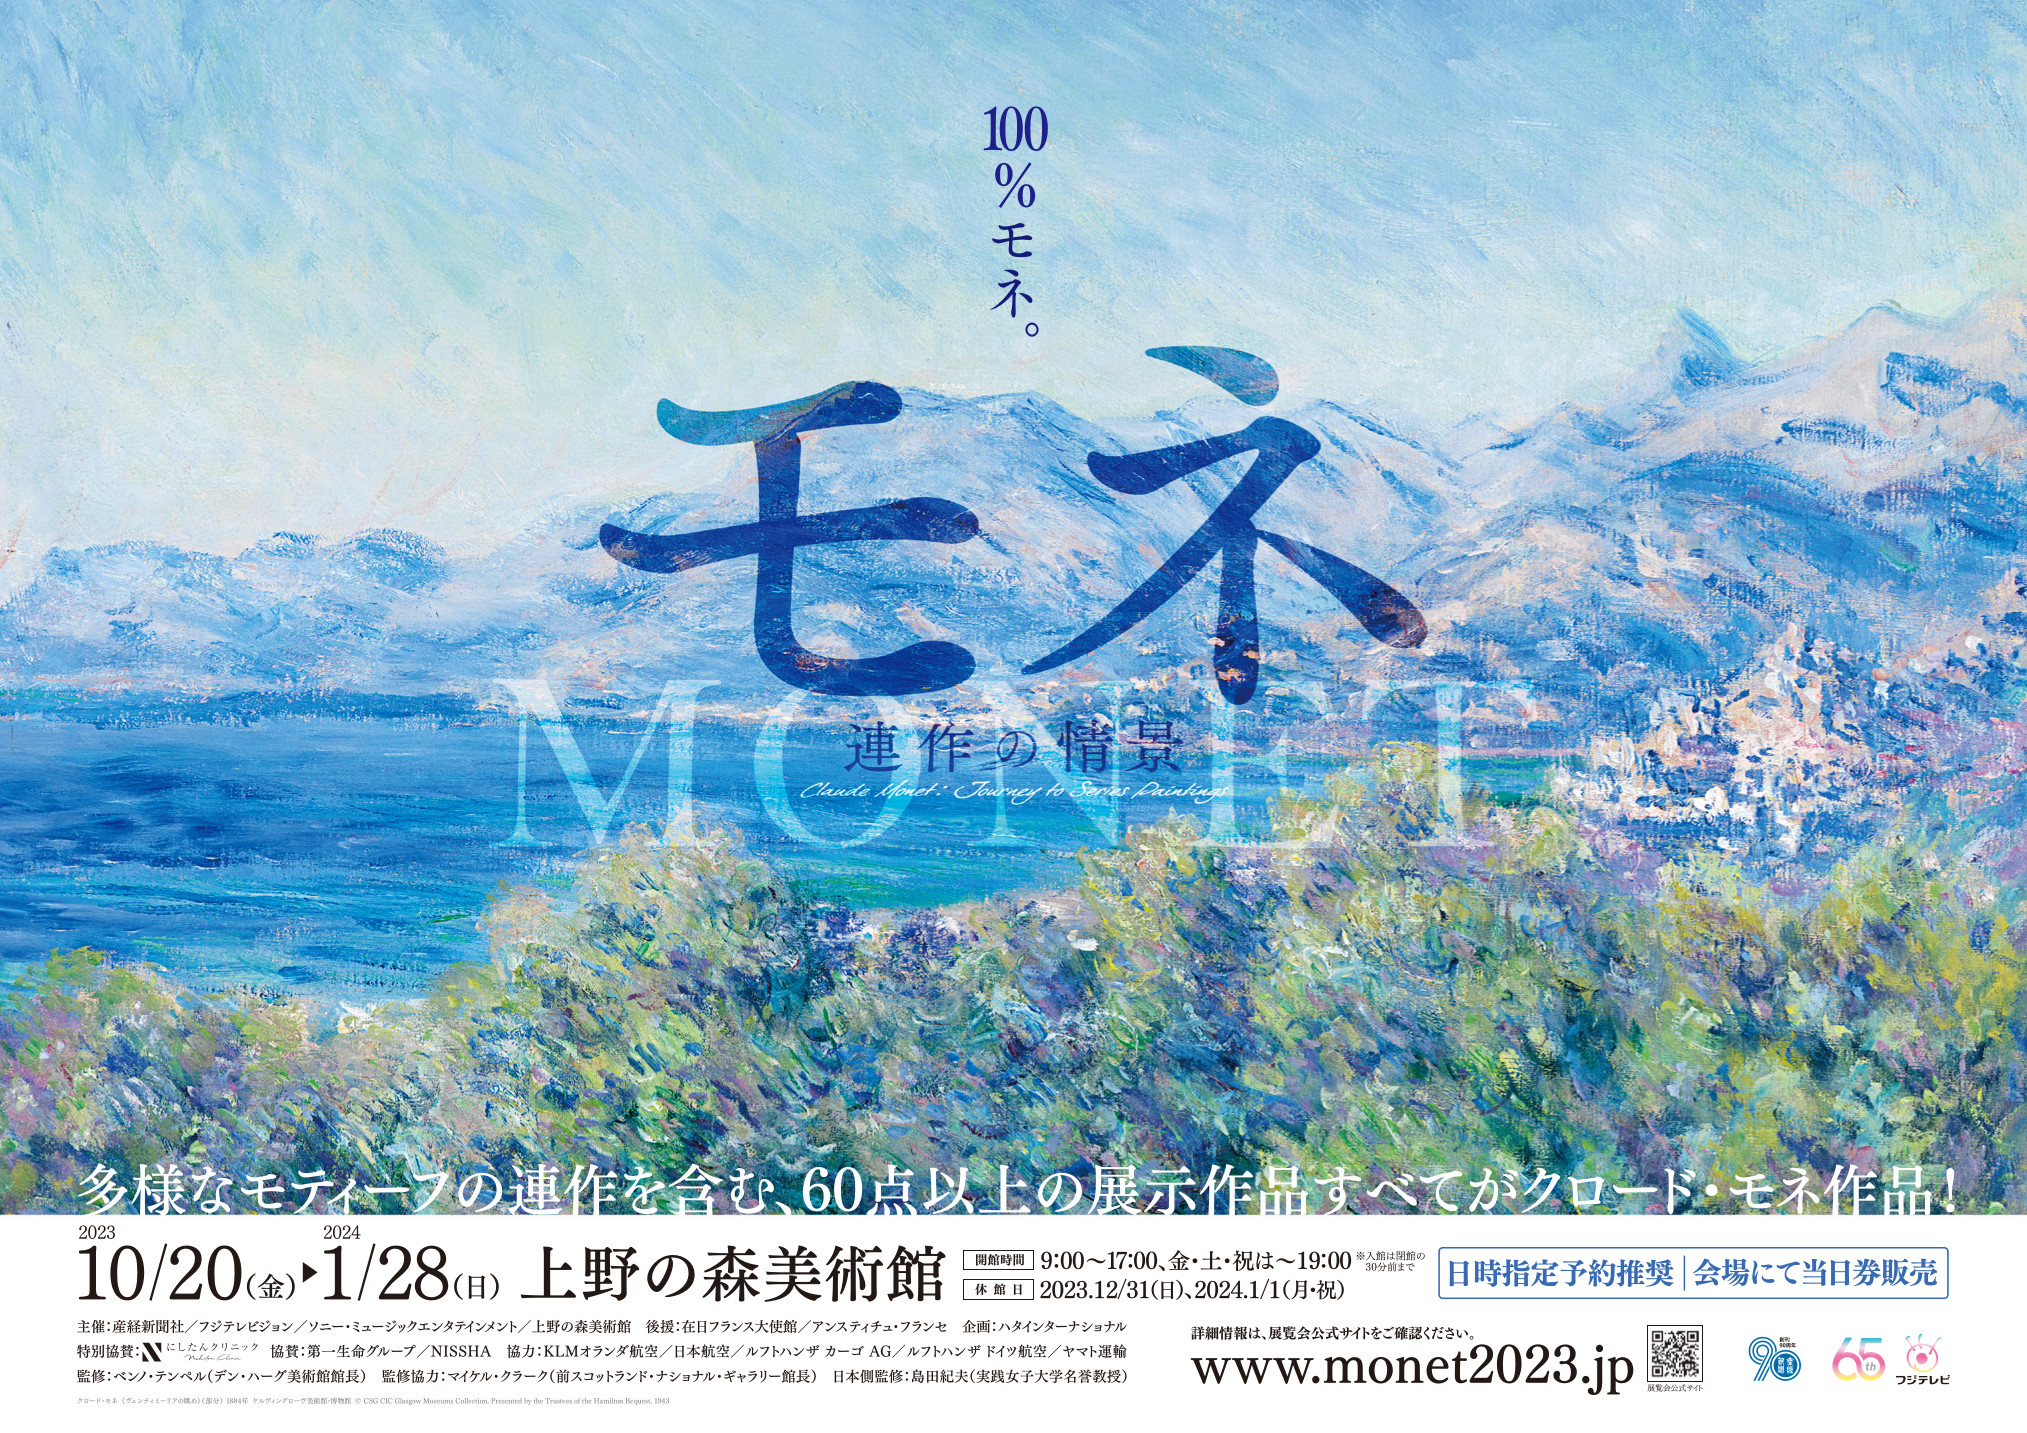 モネ展 連作の情景 チケット2枚 上野 - 美術館